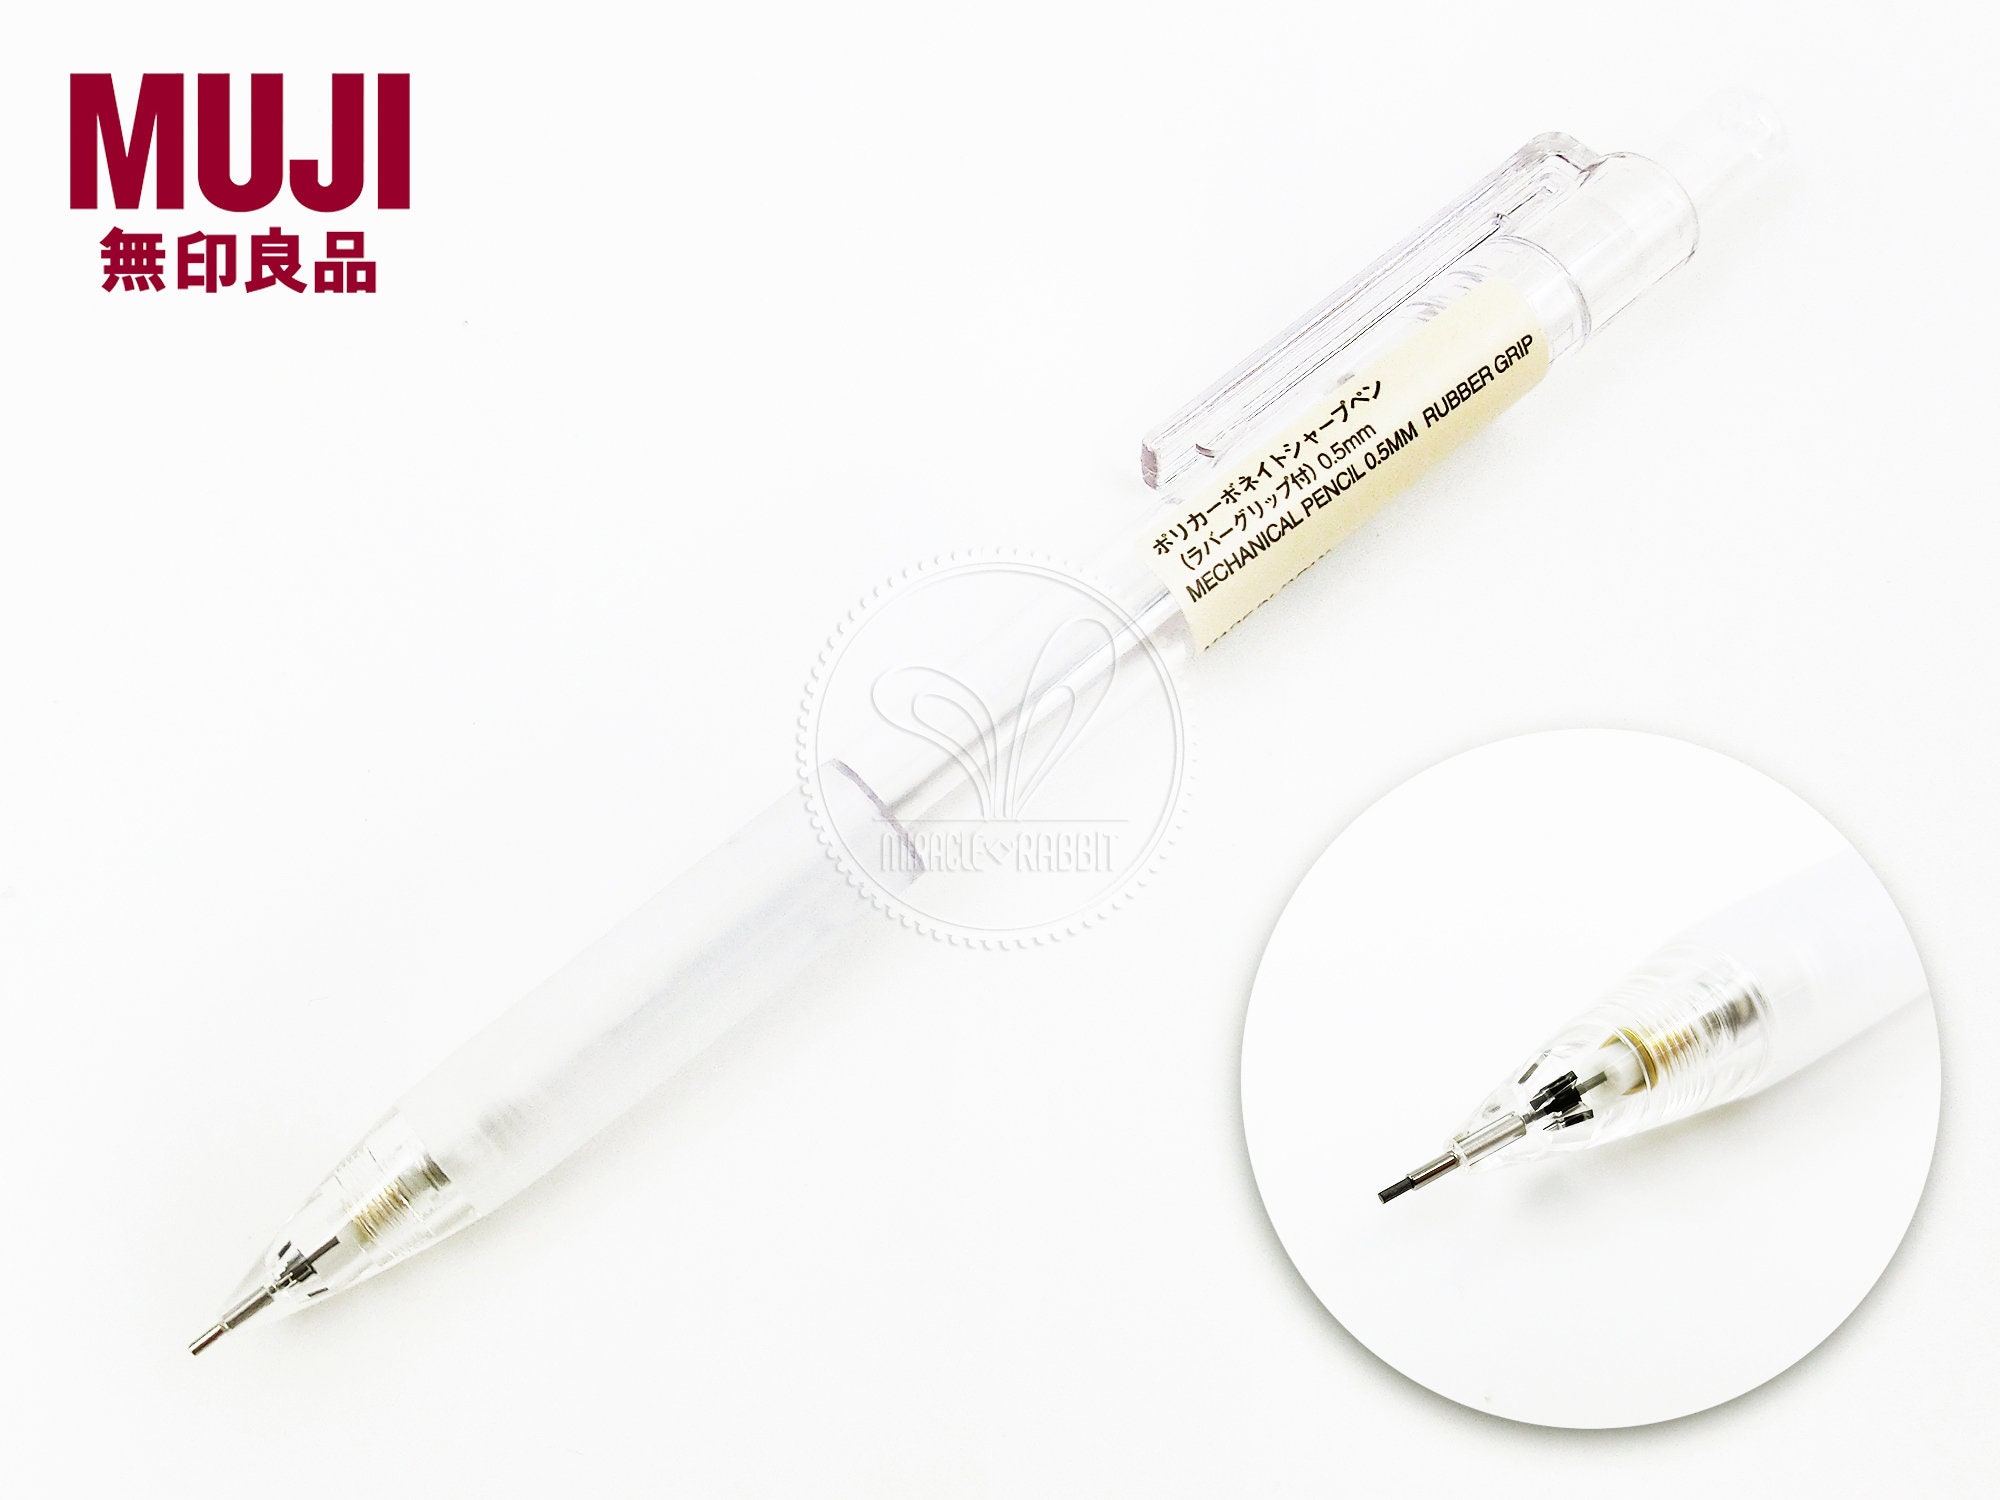 Zebra Blen Retractable Ballpoint Pen 0.5mm Japanese Bujo Stationery 